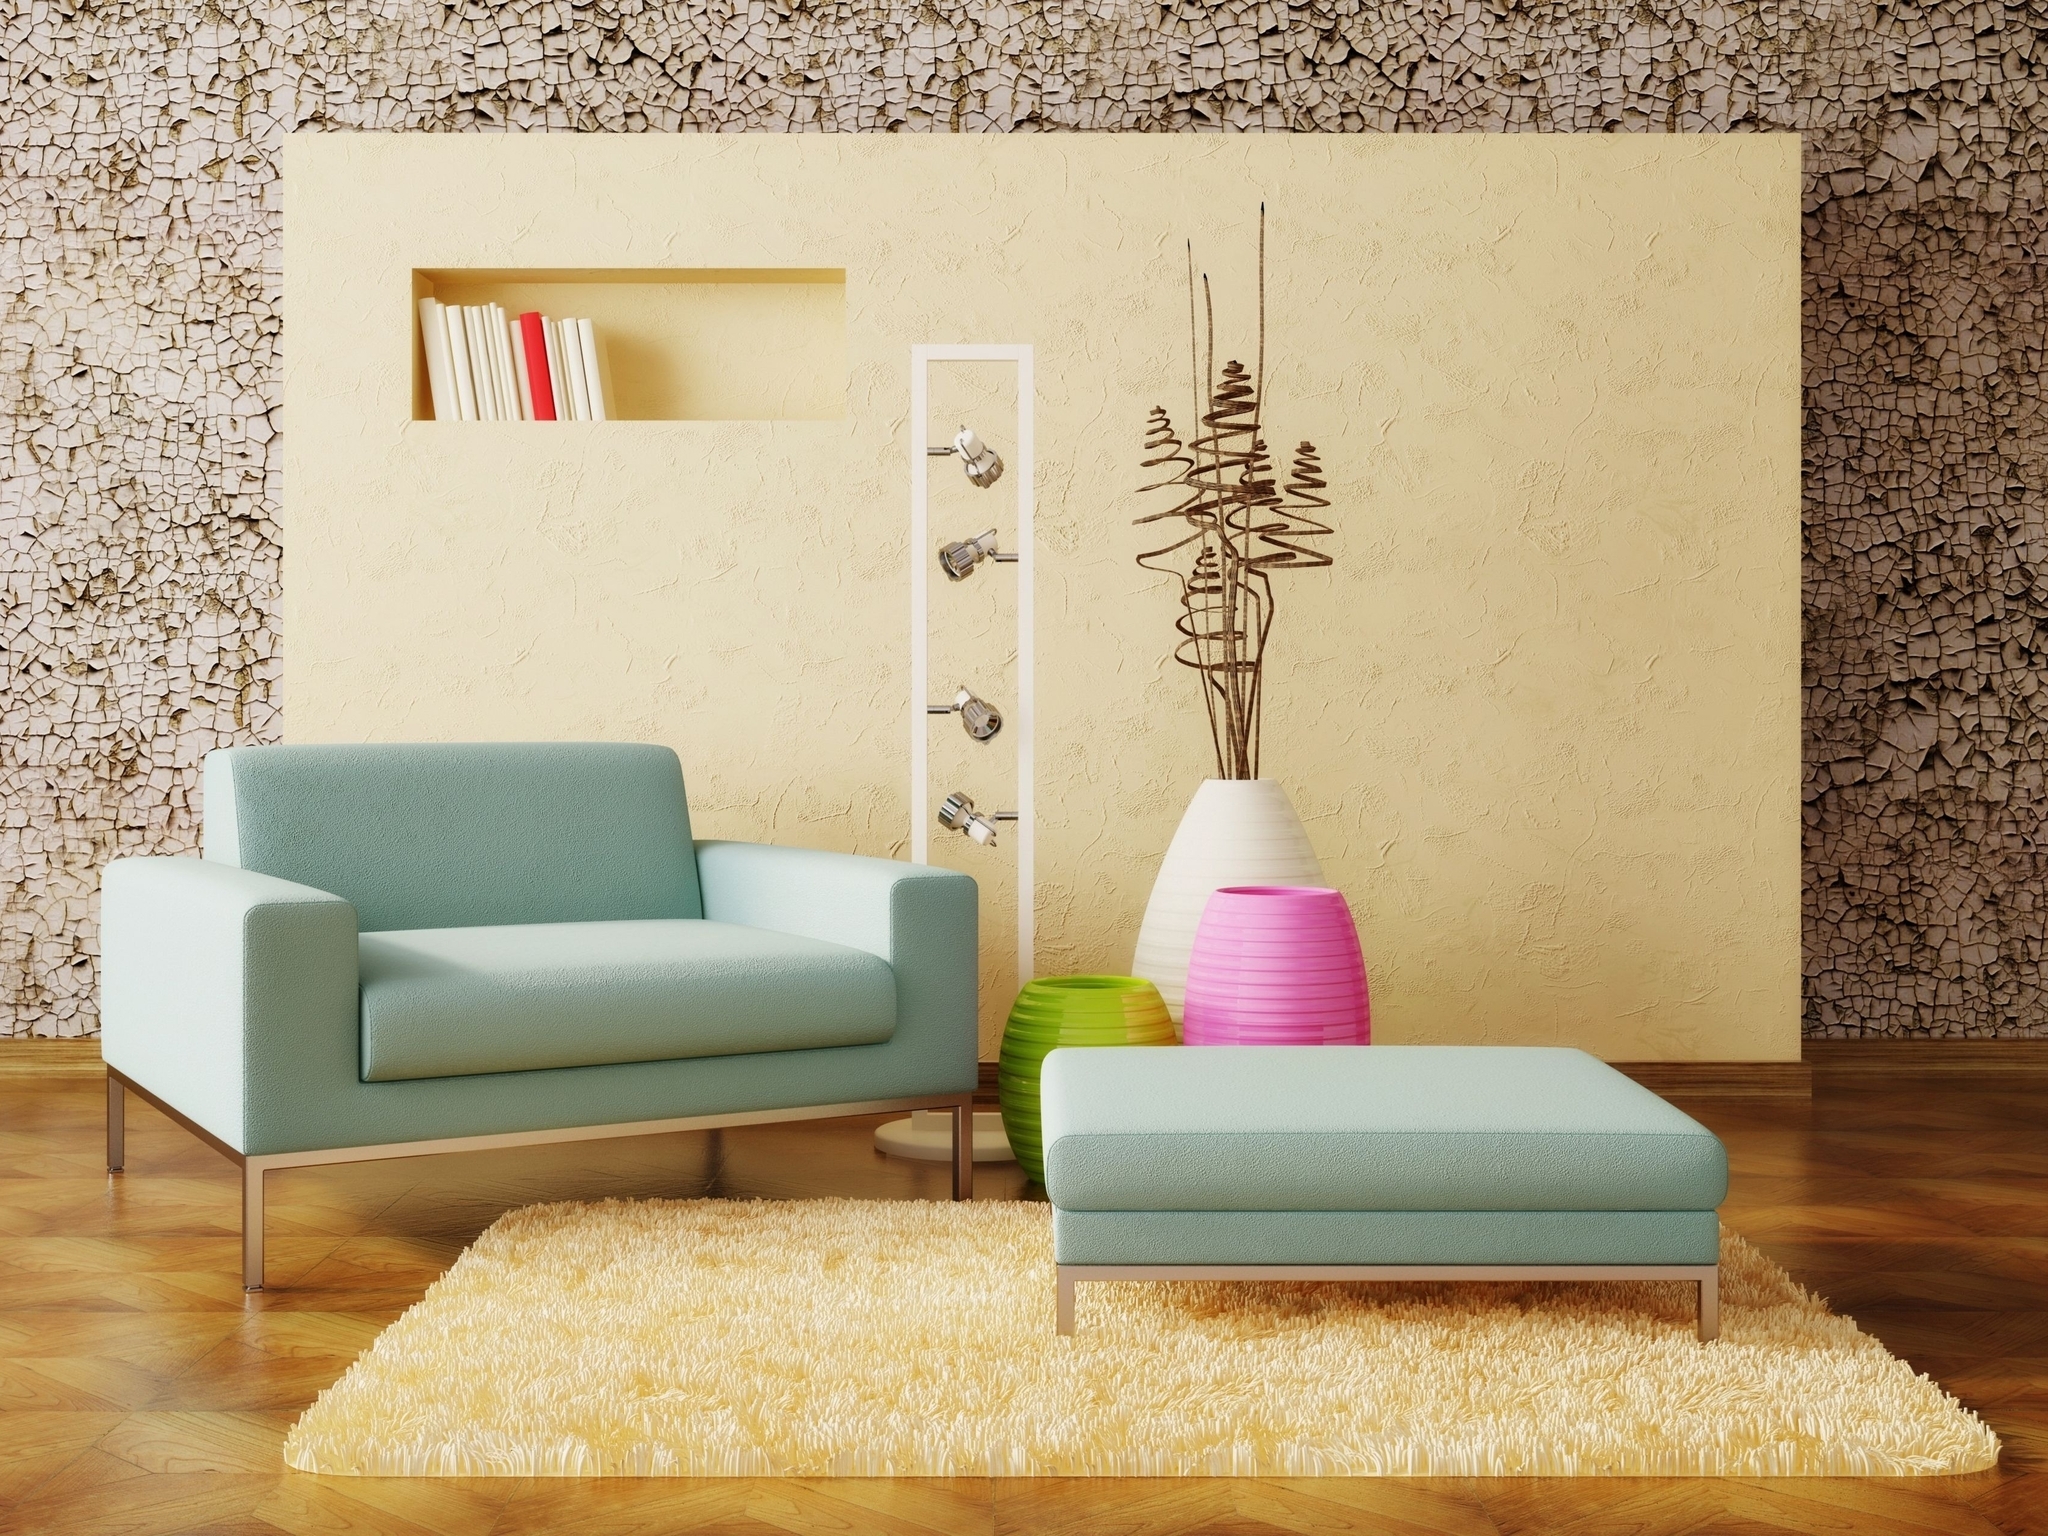 Картинка: Кресло, светильники, вазы, декор, ковёр, стены, книги